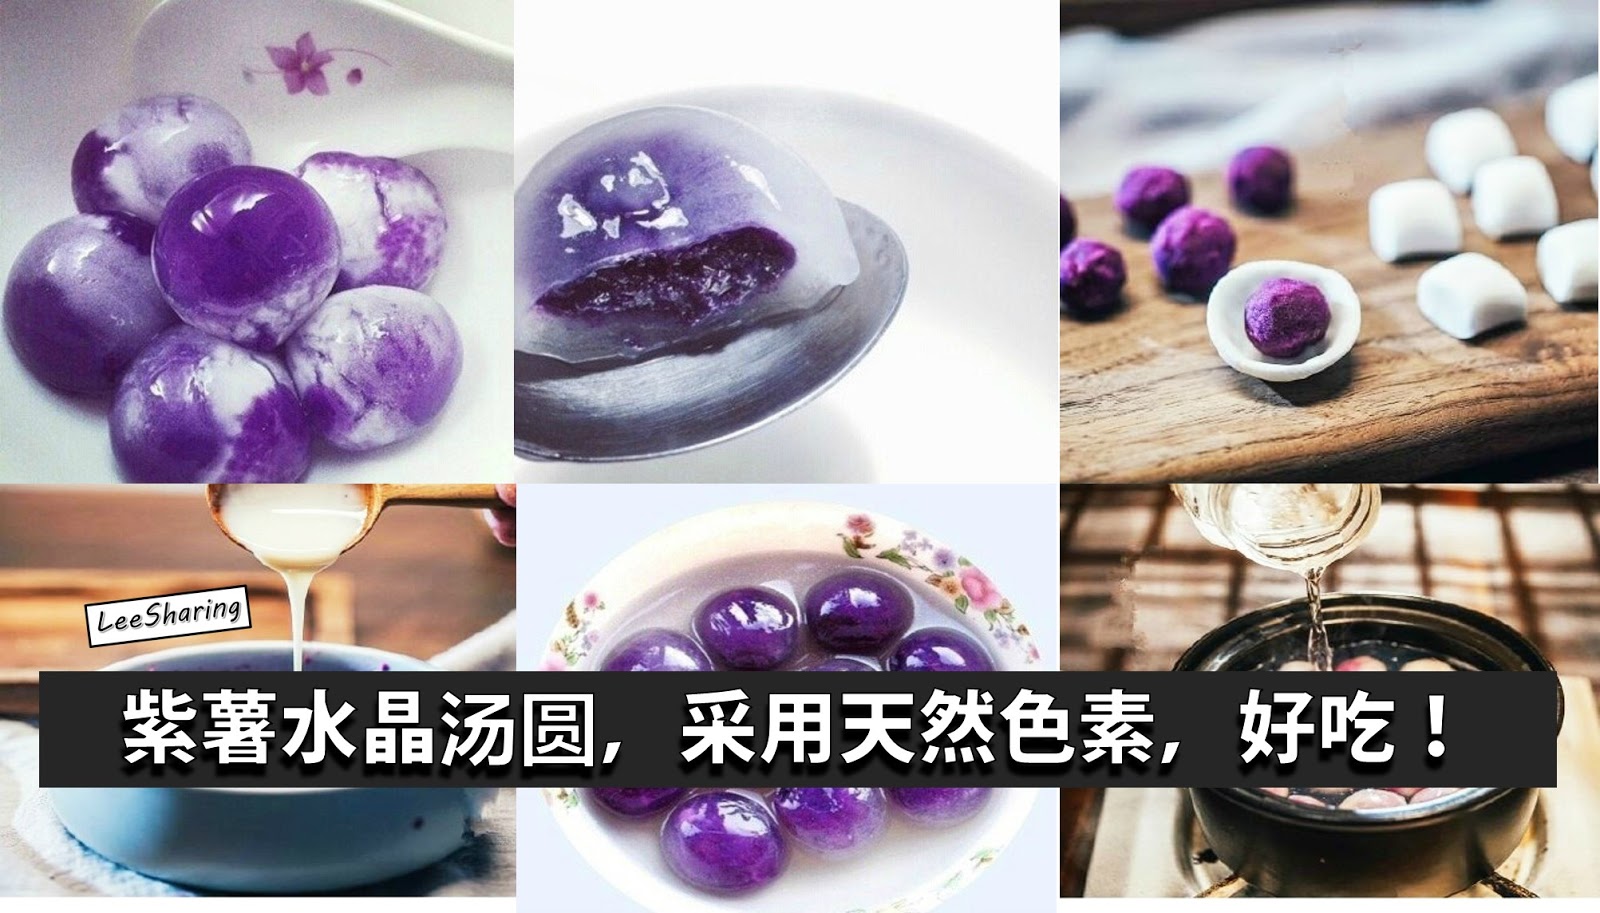 水晶山药紫薯汤圆,水晶山药紫薯汤圆的家常做法 - 美食杰水晶山药紫薯汤圆做法大全